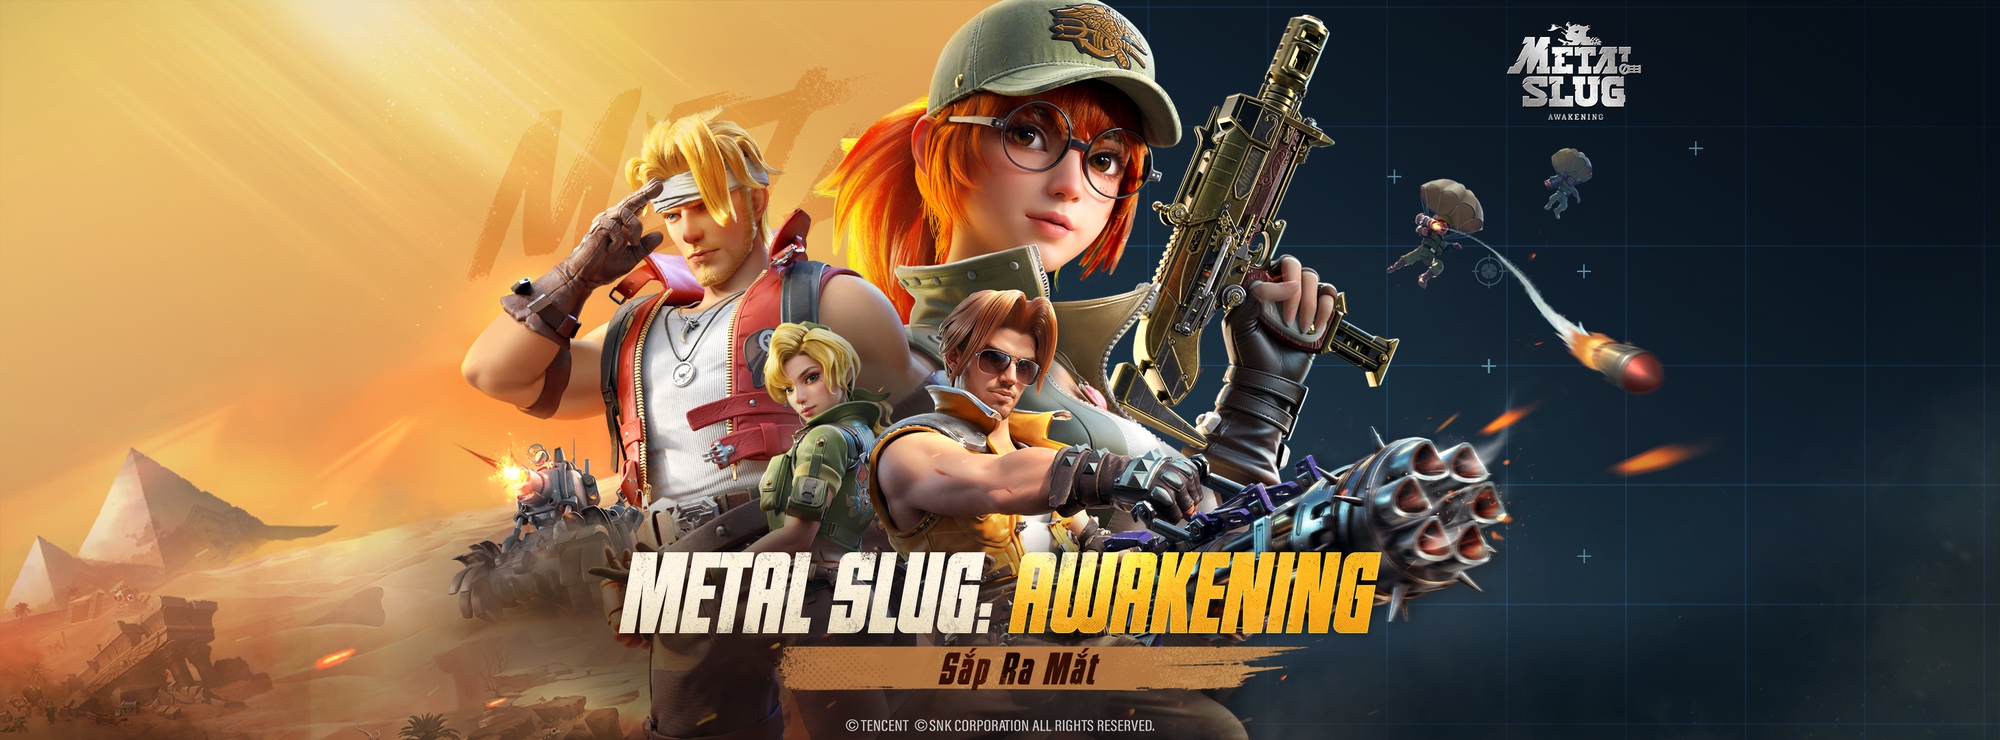 Metal Slug: Awakening - Huyền thoại game thùng tái xuất trên di động, rục  rịch ra mắt ở Việt Nam và 7 khu vực khác